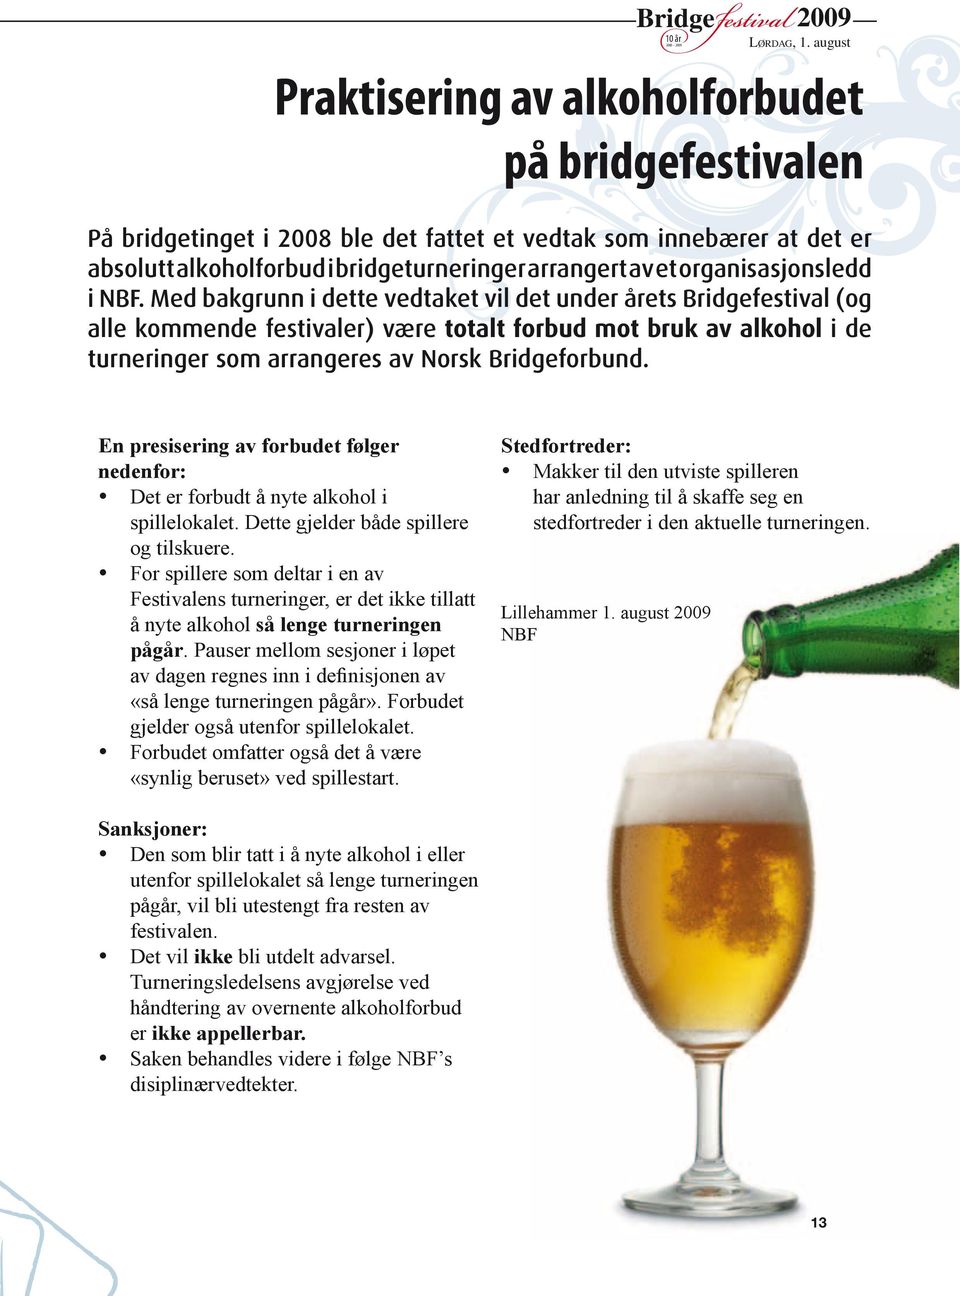 Med bakgrunn i dette vedtaket vil det under årets Bridgefestival (og alle kommende festivaler) være totalt forbud mot bruk av alkohol i de turneringer som arrangeres av norsk Bridgeforbund.